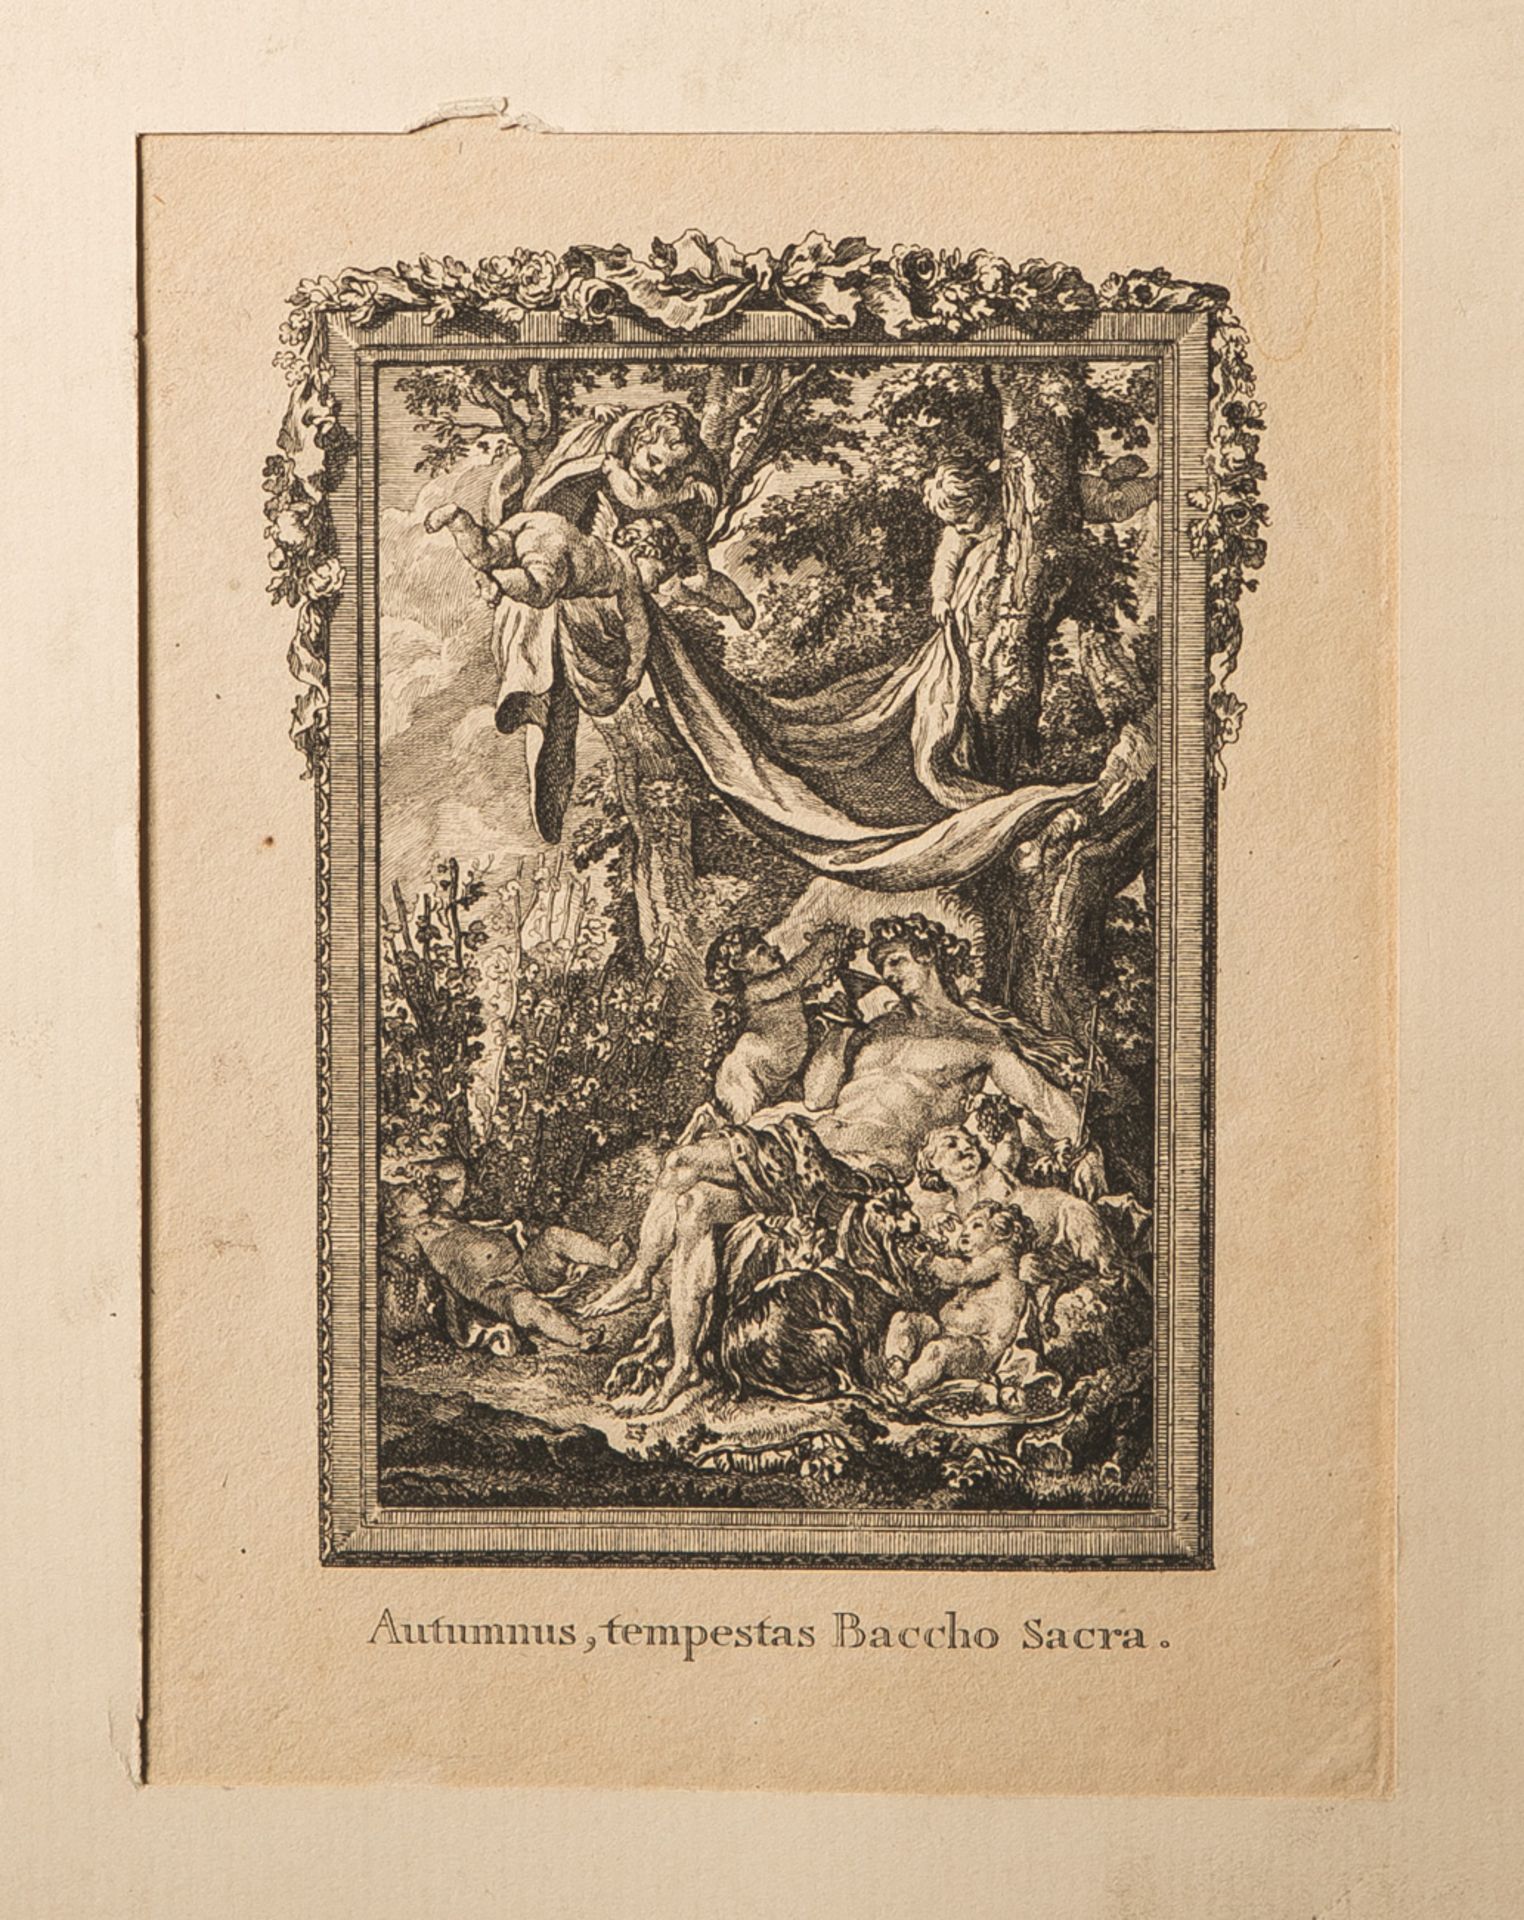 Longueil, Joseph de (1730-1792), bez. "Autumnus, tempestas Baccho Sacra." (wohl 1773),